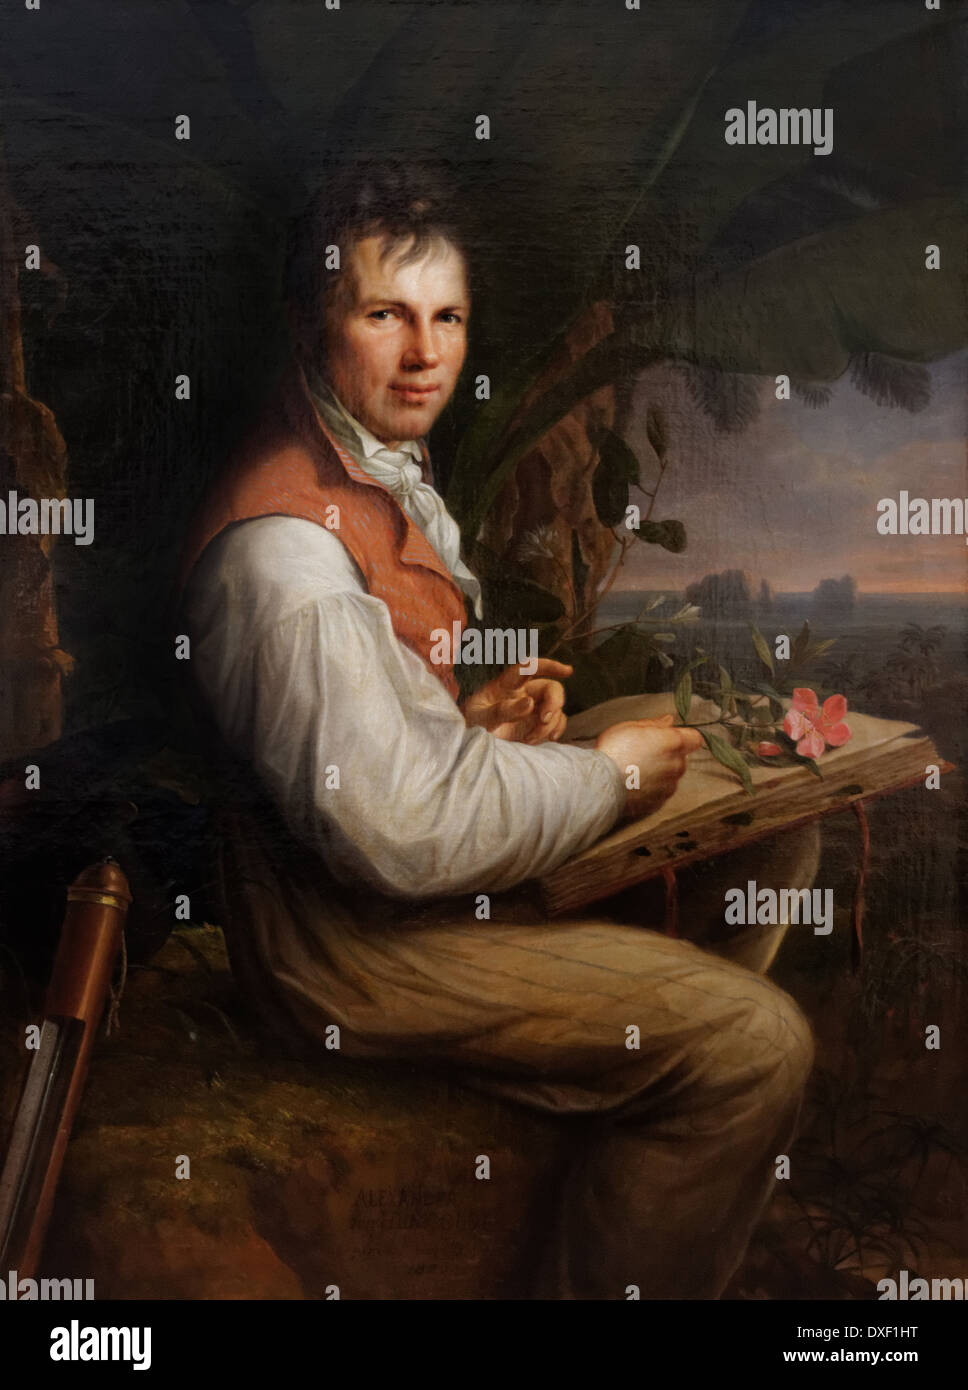 Art; Painting; Museum; Germany ; Friedrich Georg Weitsch - Portrait of Alexander von Humboldt - 1806 - XIX th century - German s Stock Photo